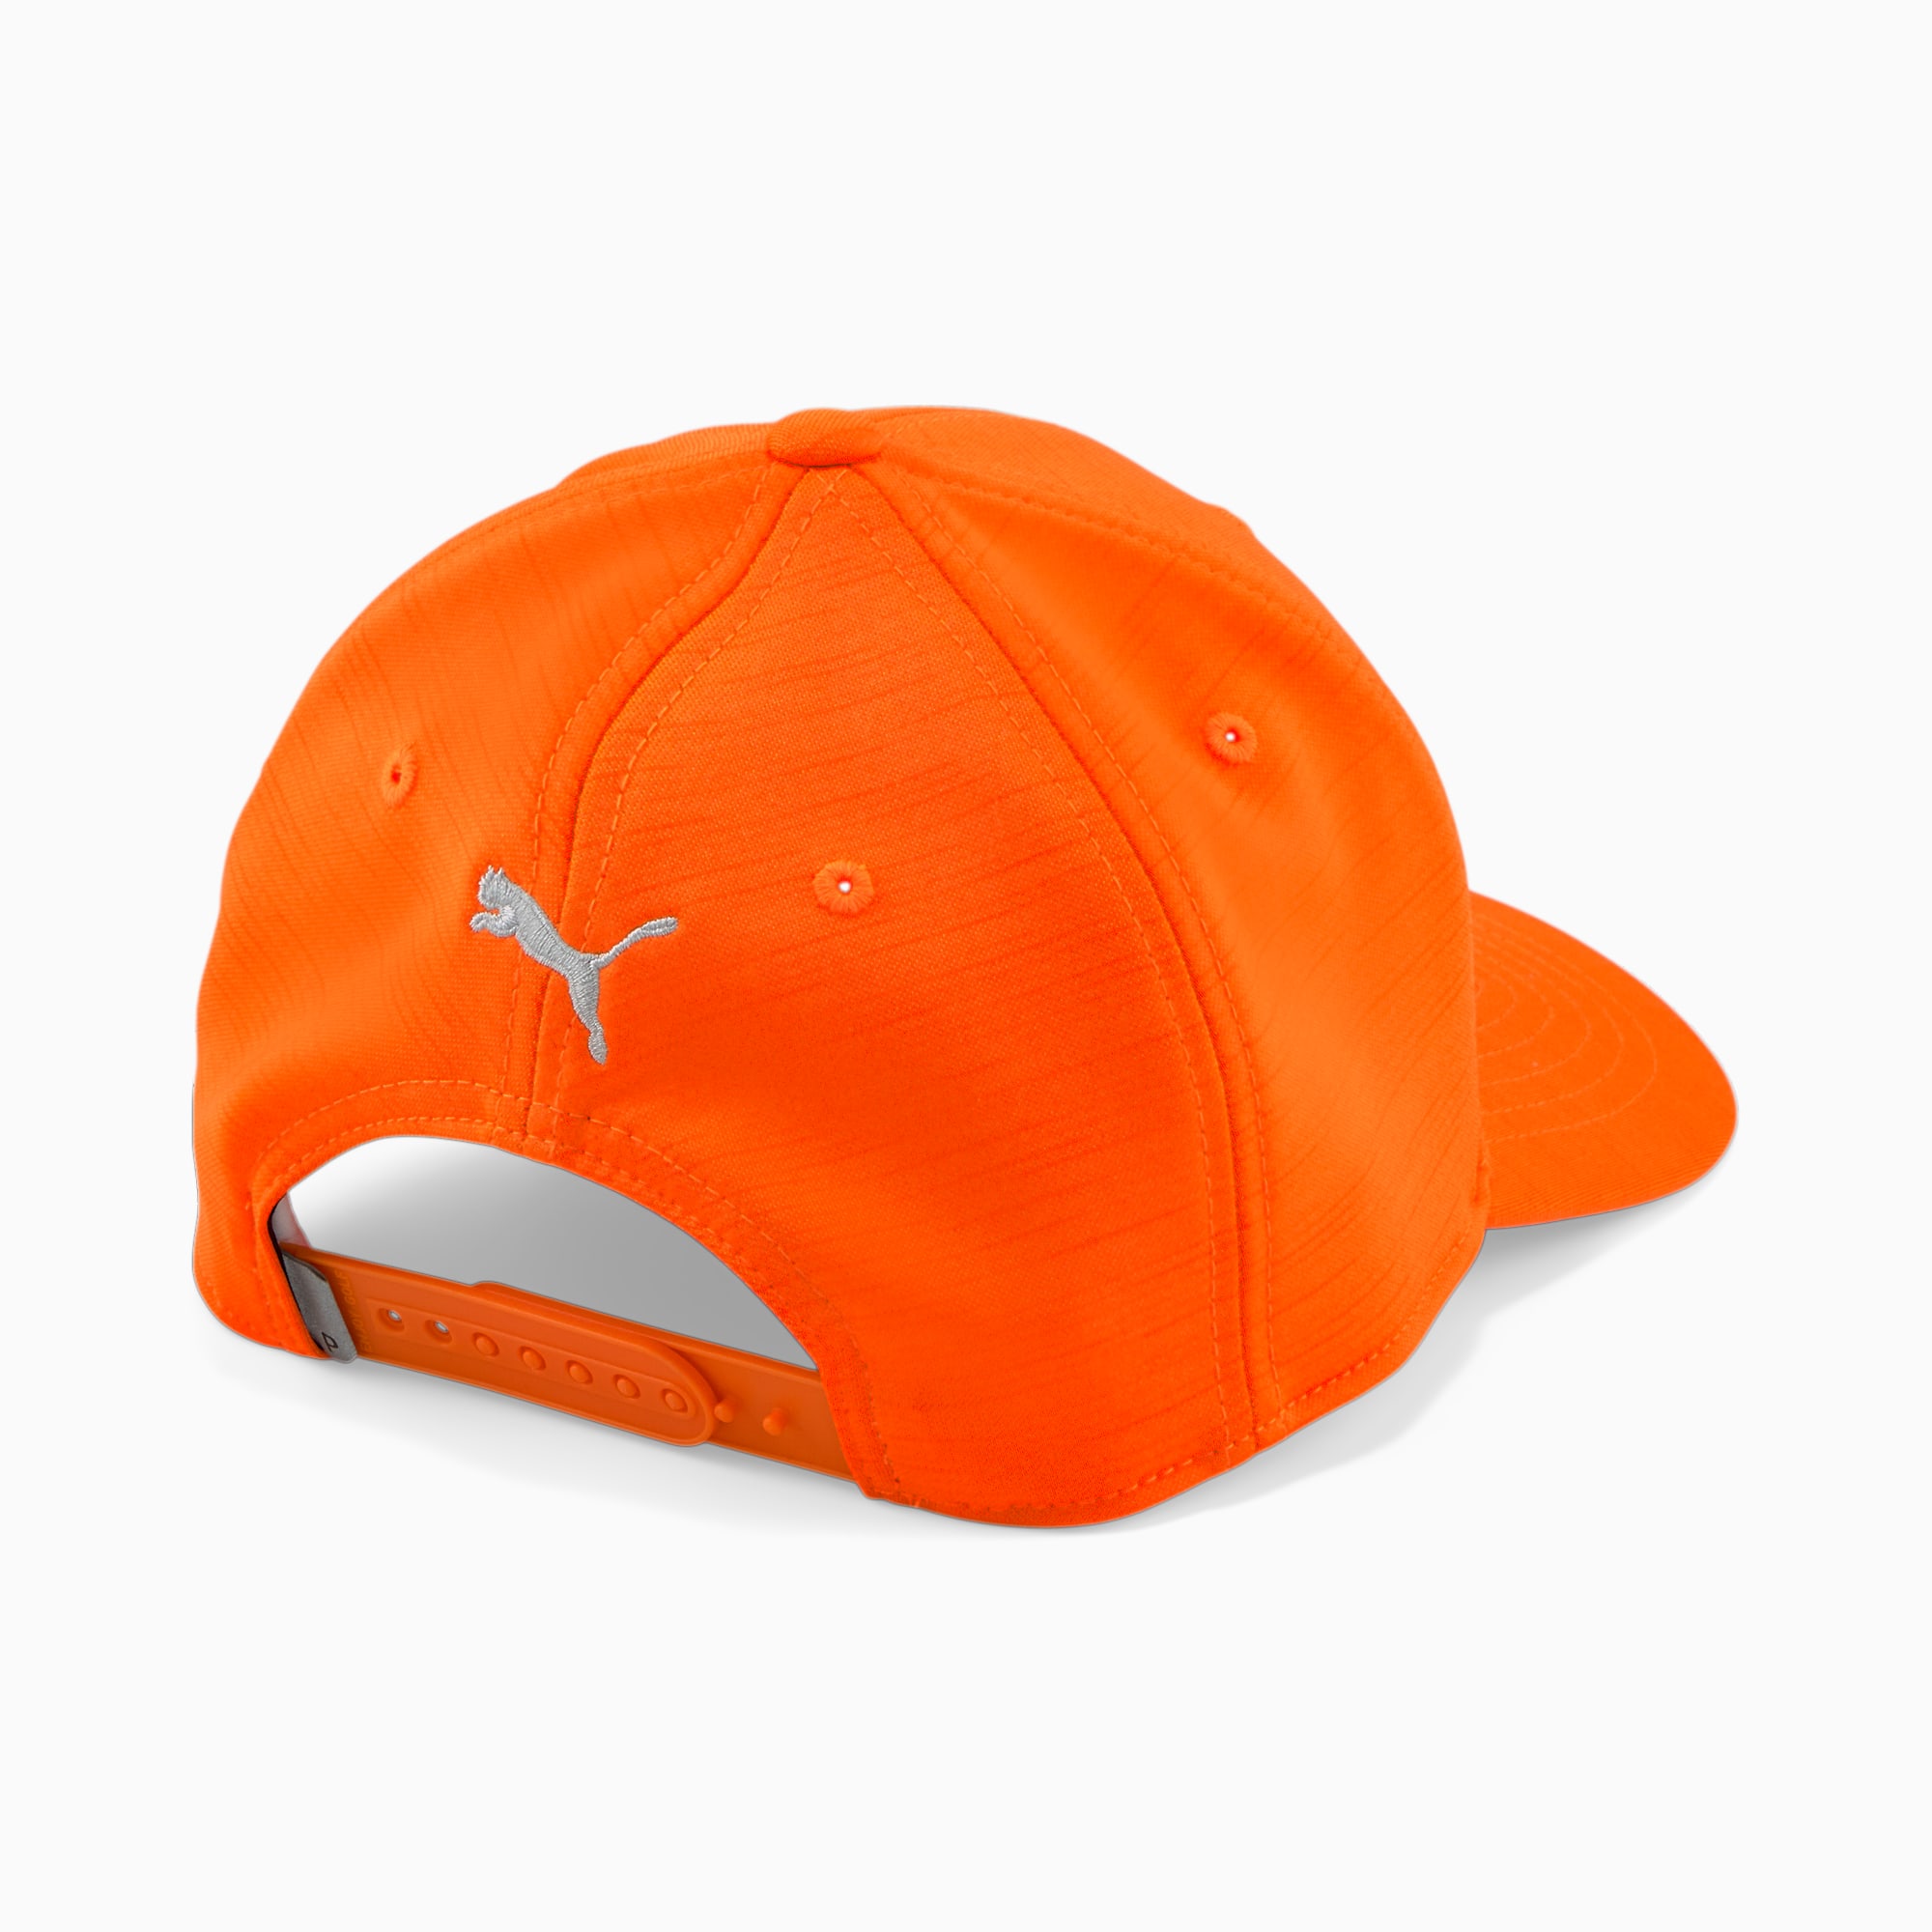 PUMA Casquette De Golf P Pour Homme, Orange/Gris